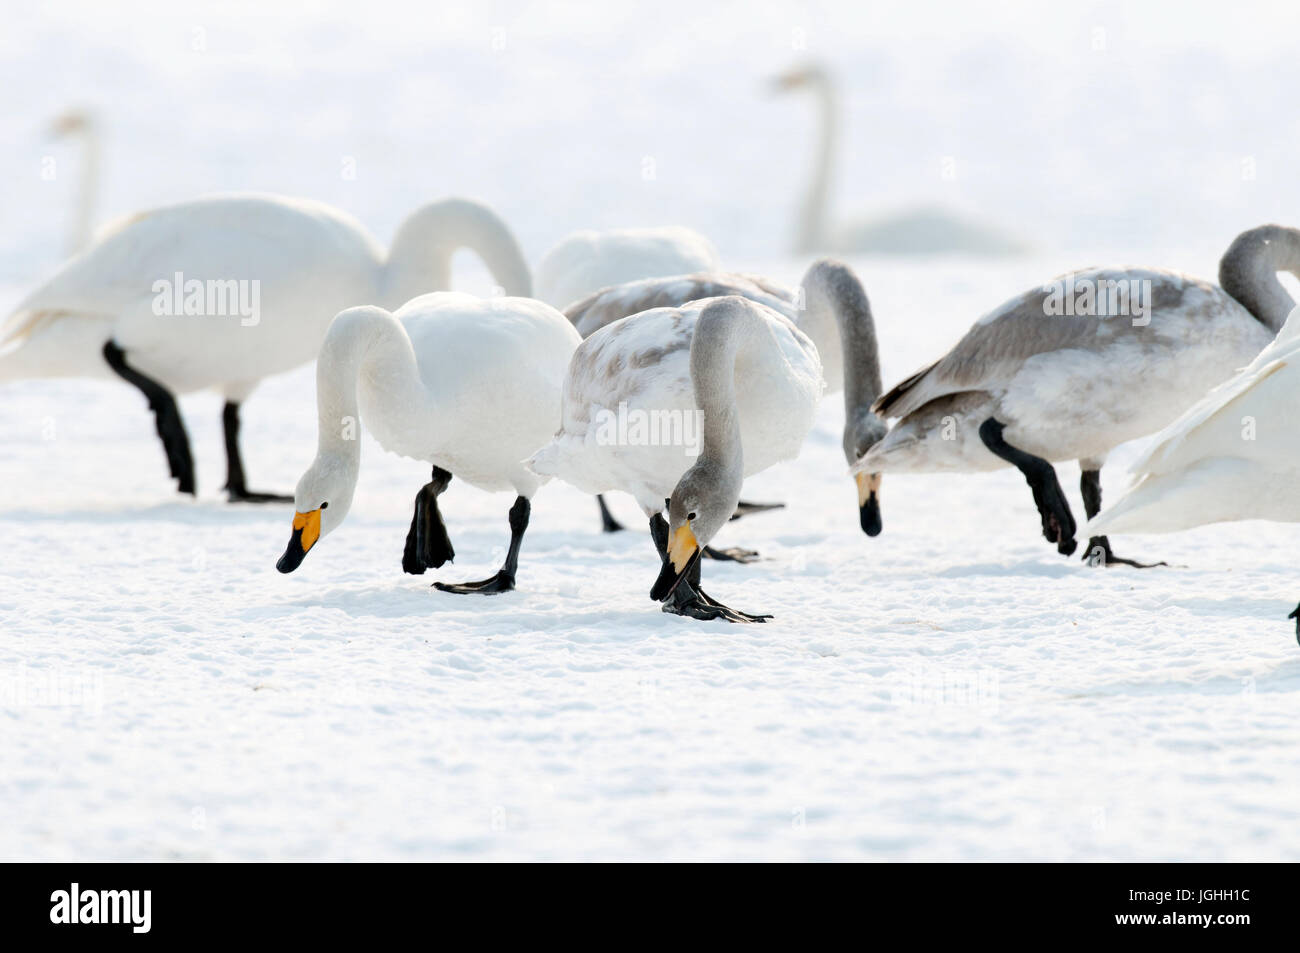 Whooper swan (Cygnus cygnus), Japan Swan Whooper, Swan, Cygnus cygnus (Cygne chanteur) Japan, 2017 Stock Photo